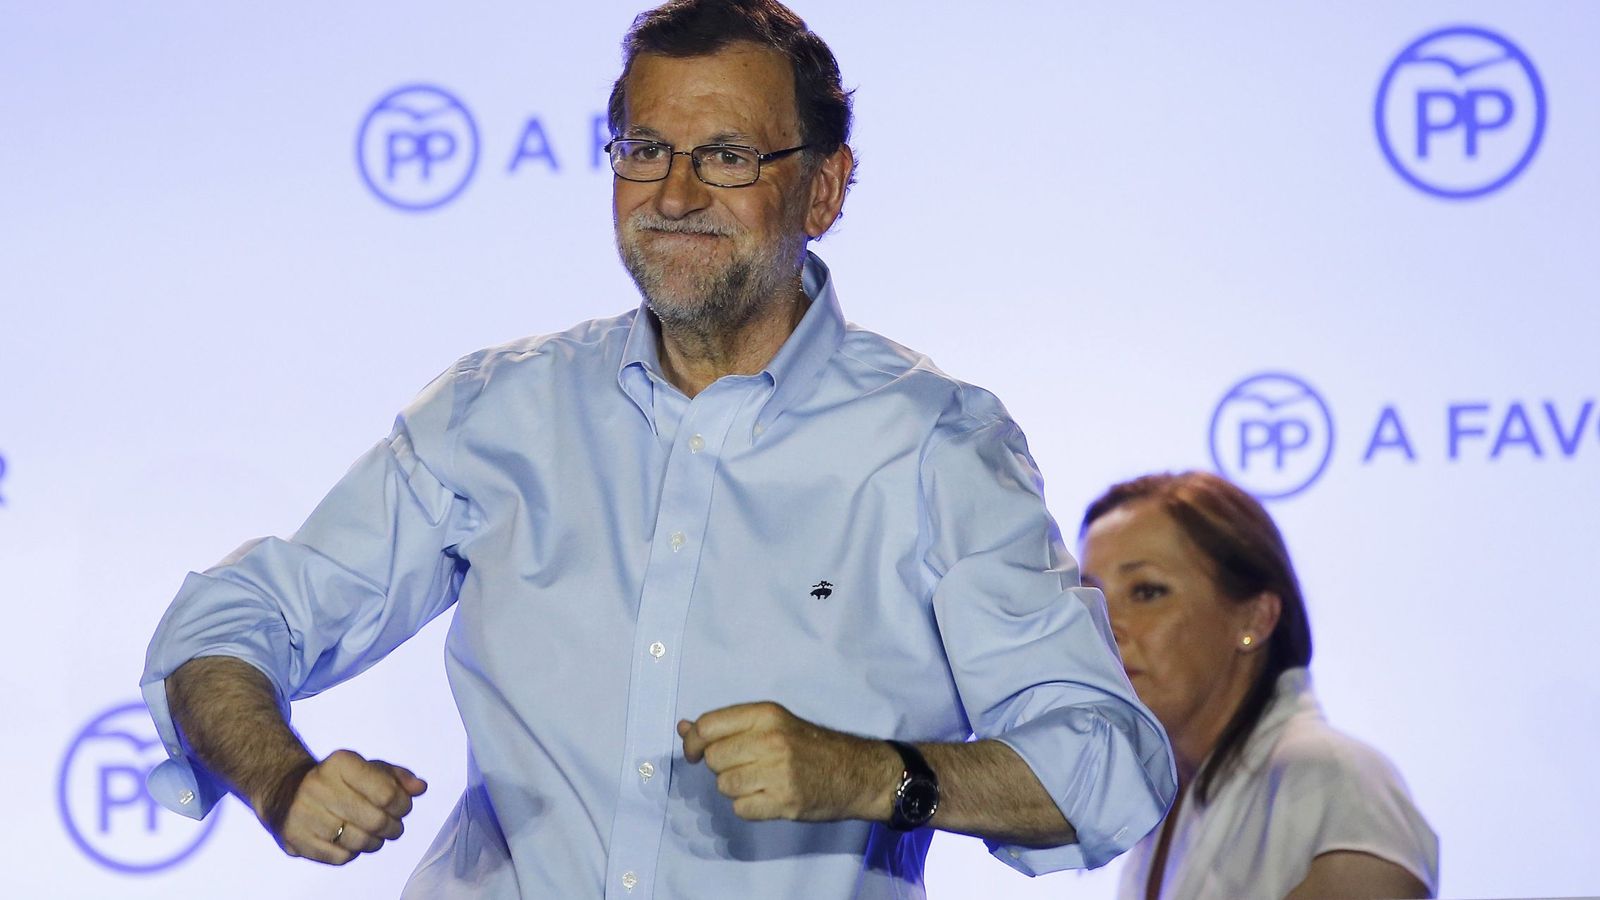 Foto: El presidente del Gobierno en funciones, Mariano Rajoy (2d), junto a su mujer durante su comparecencia ante los simpatizantes en el exterior de la sede del partido. (Reuters)